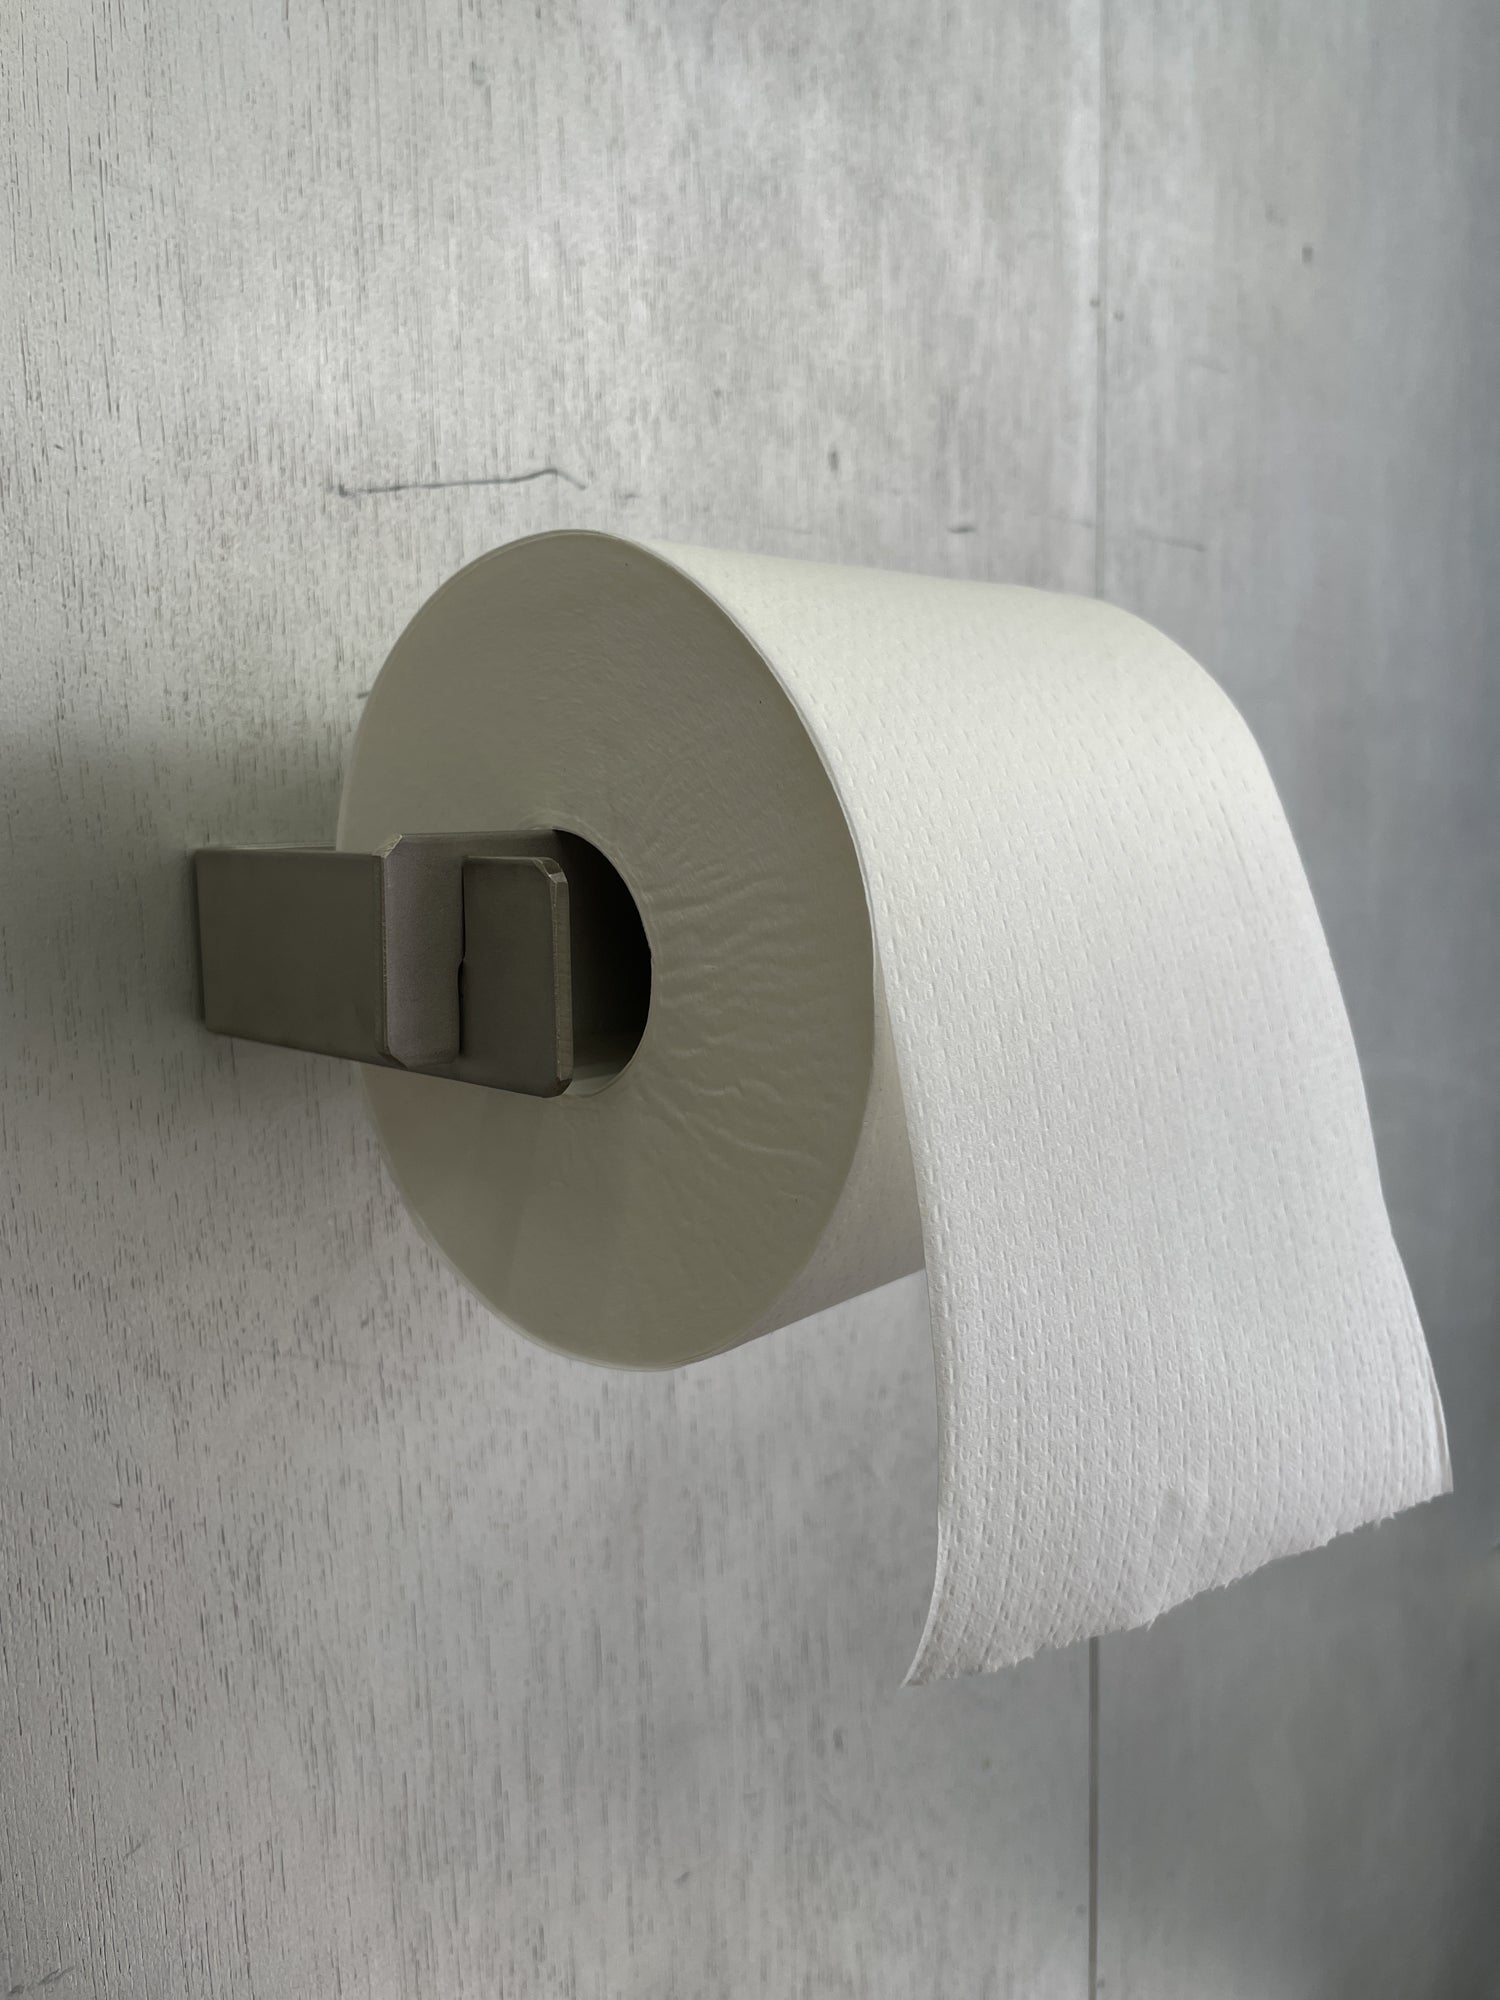 Steel Toilet Paper Holder, BOLTS Hardware Japan